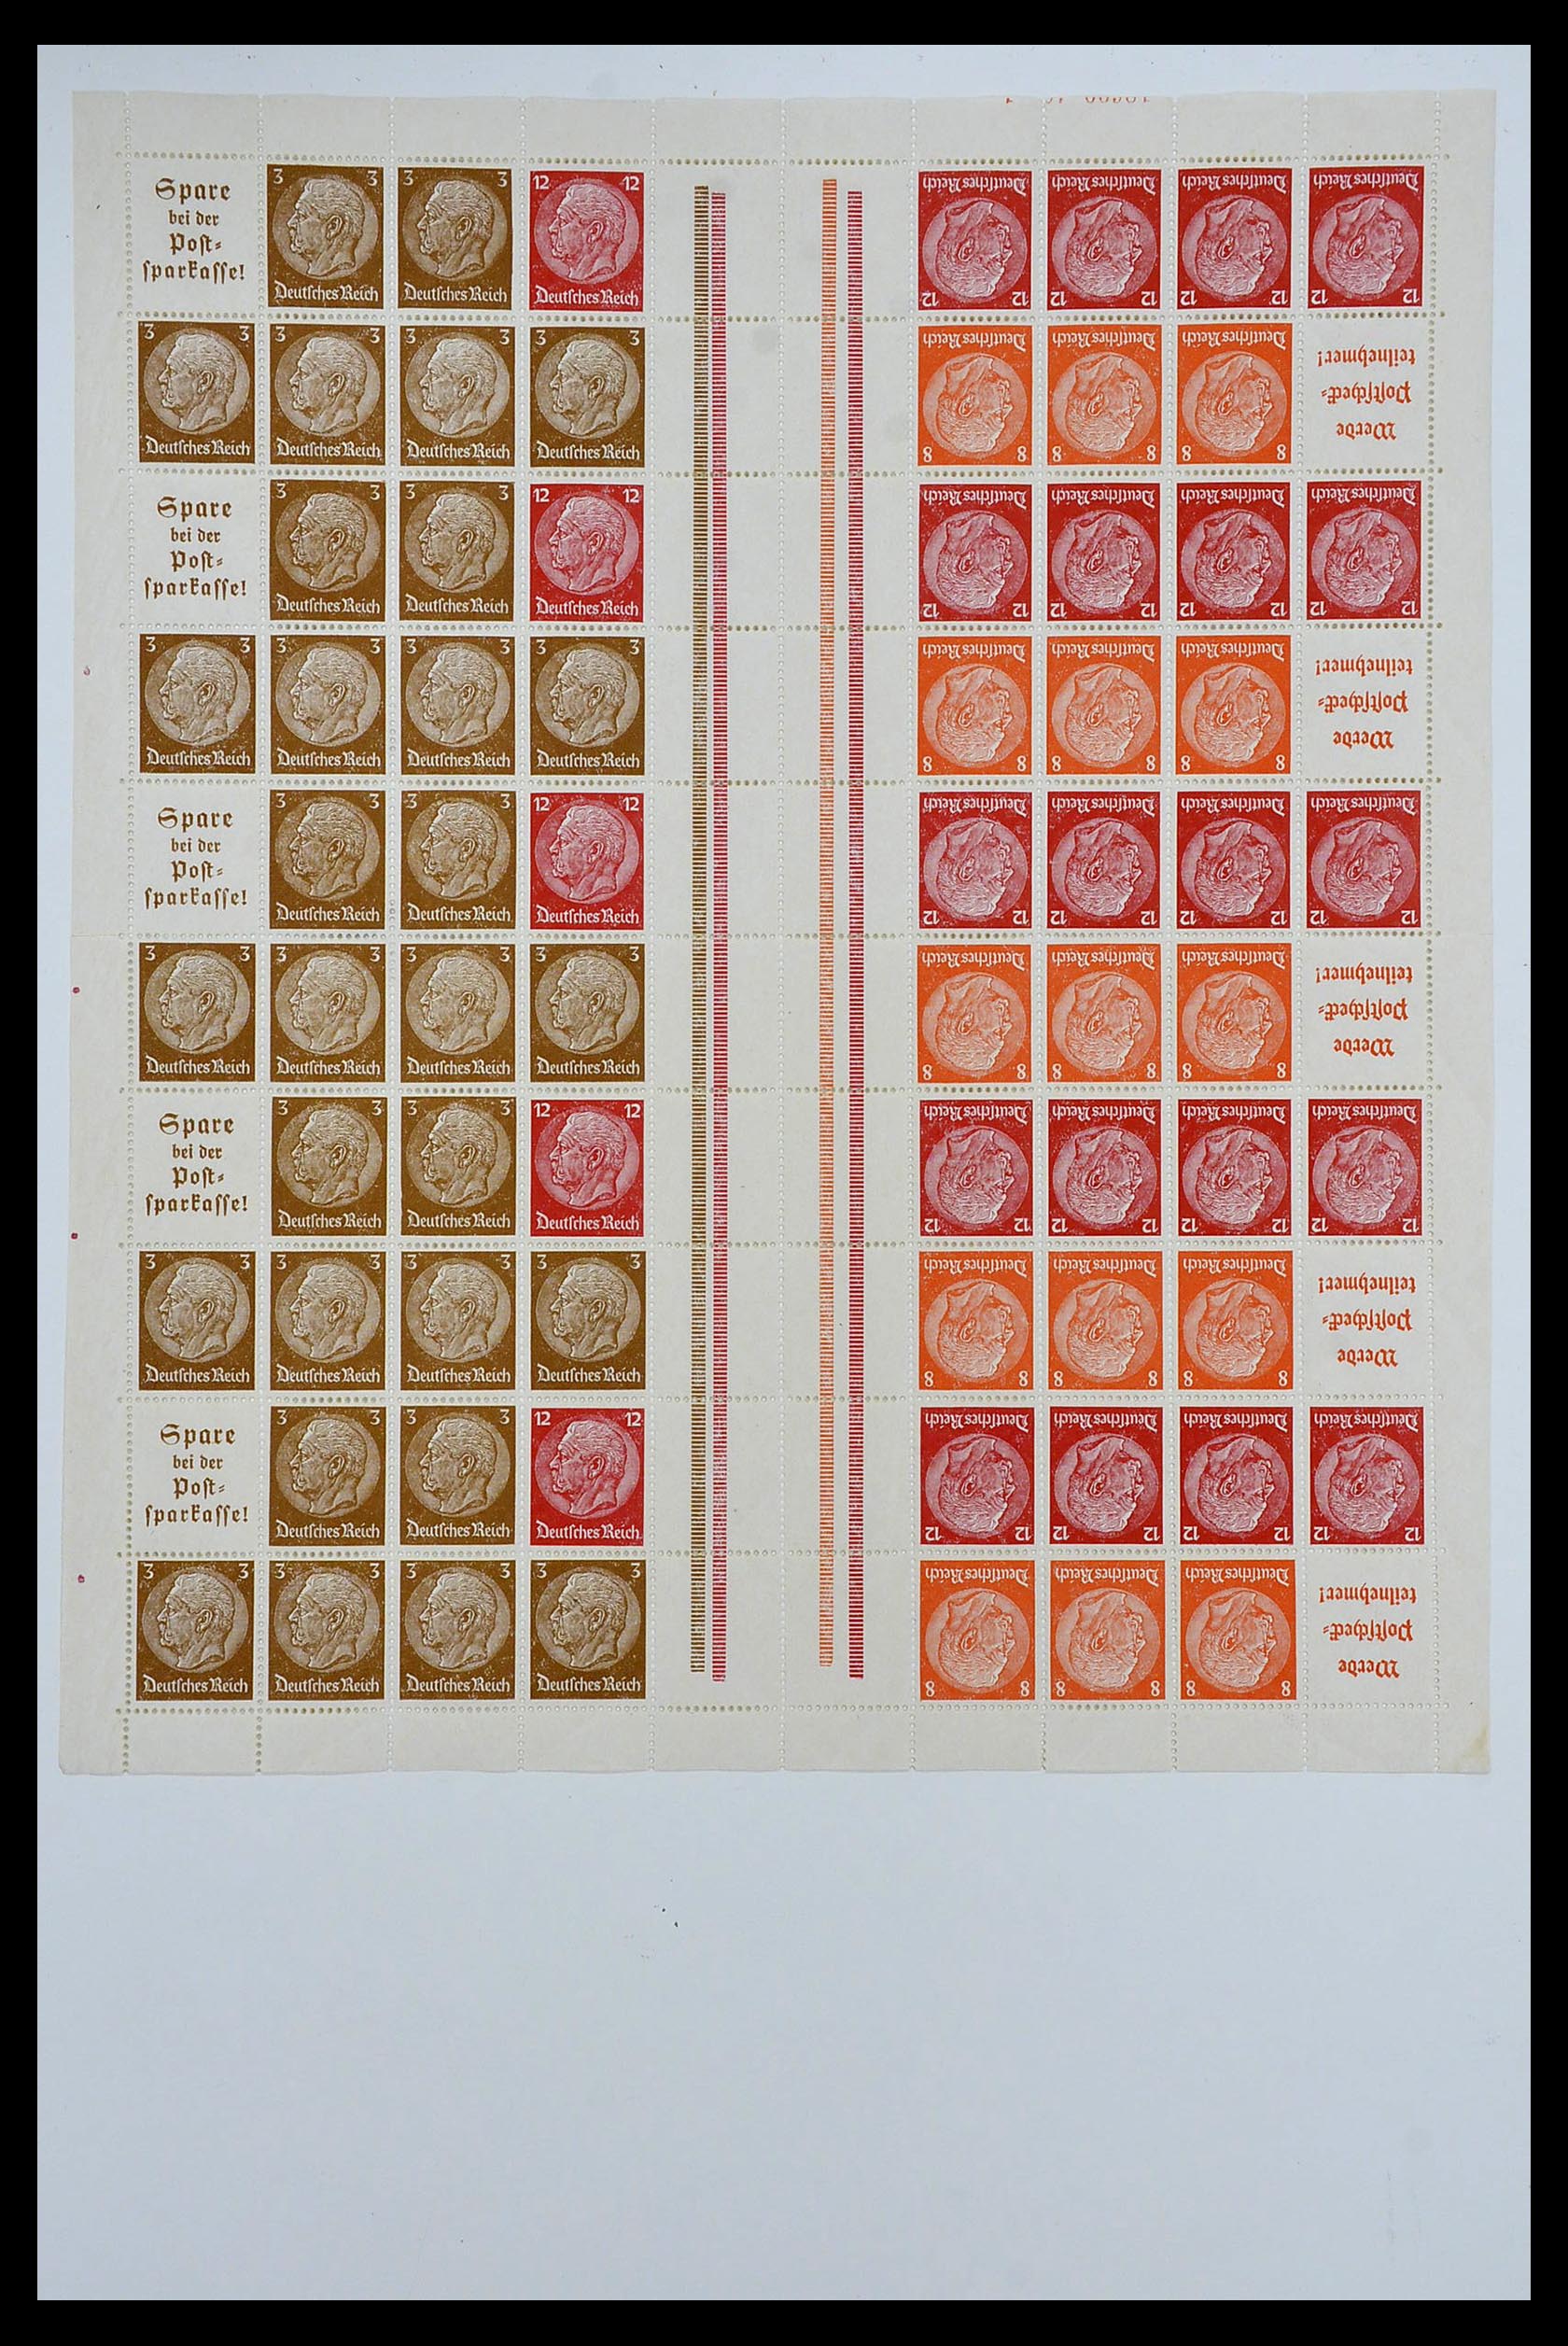 34164 033 - Stamp collection 34164 German Reich Markenheftchenbogen 1933-1942.